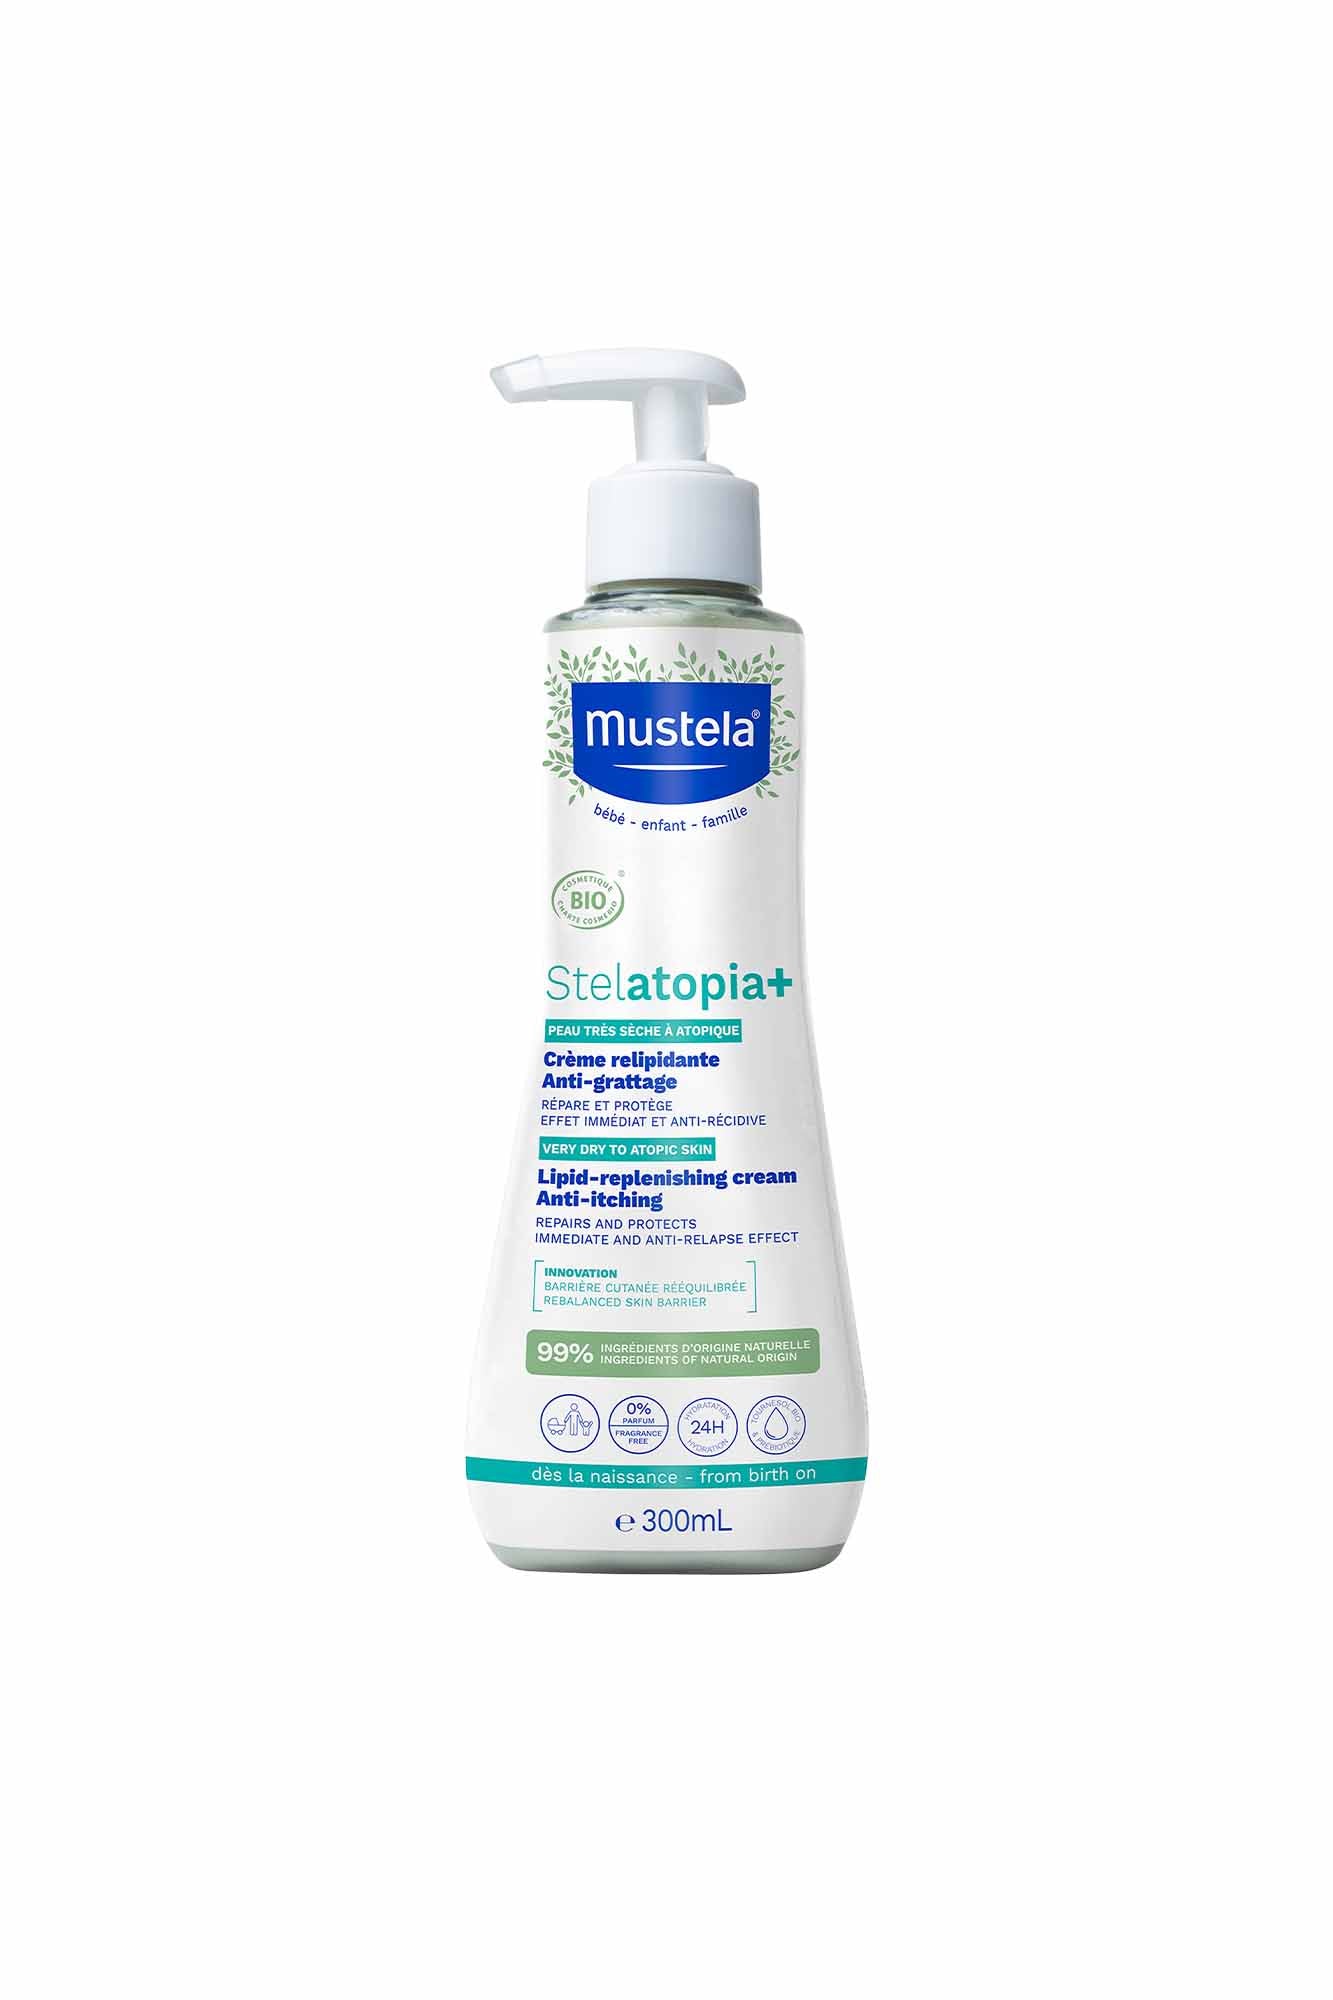 Mustela Stelatopia+ Lipid-replenishing Cream - 300ml